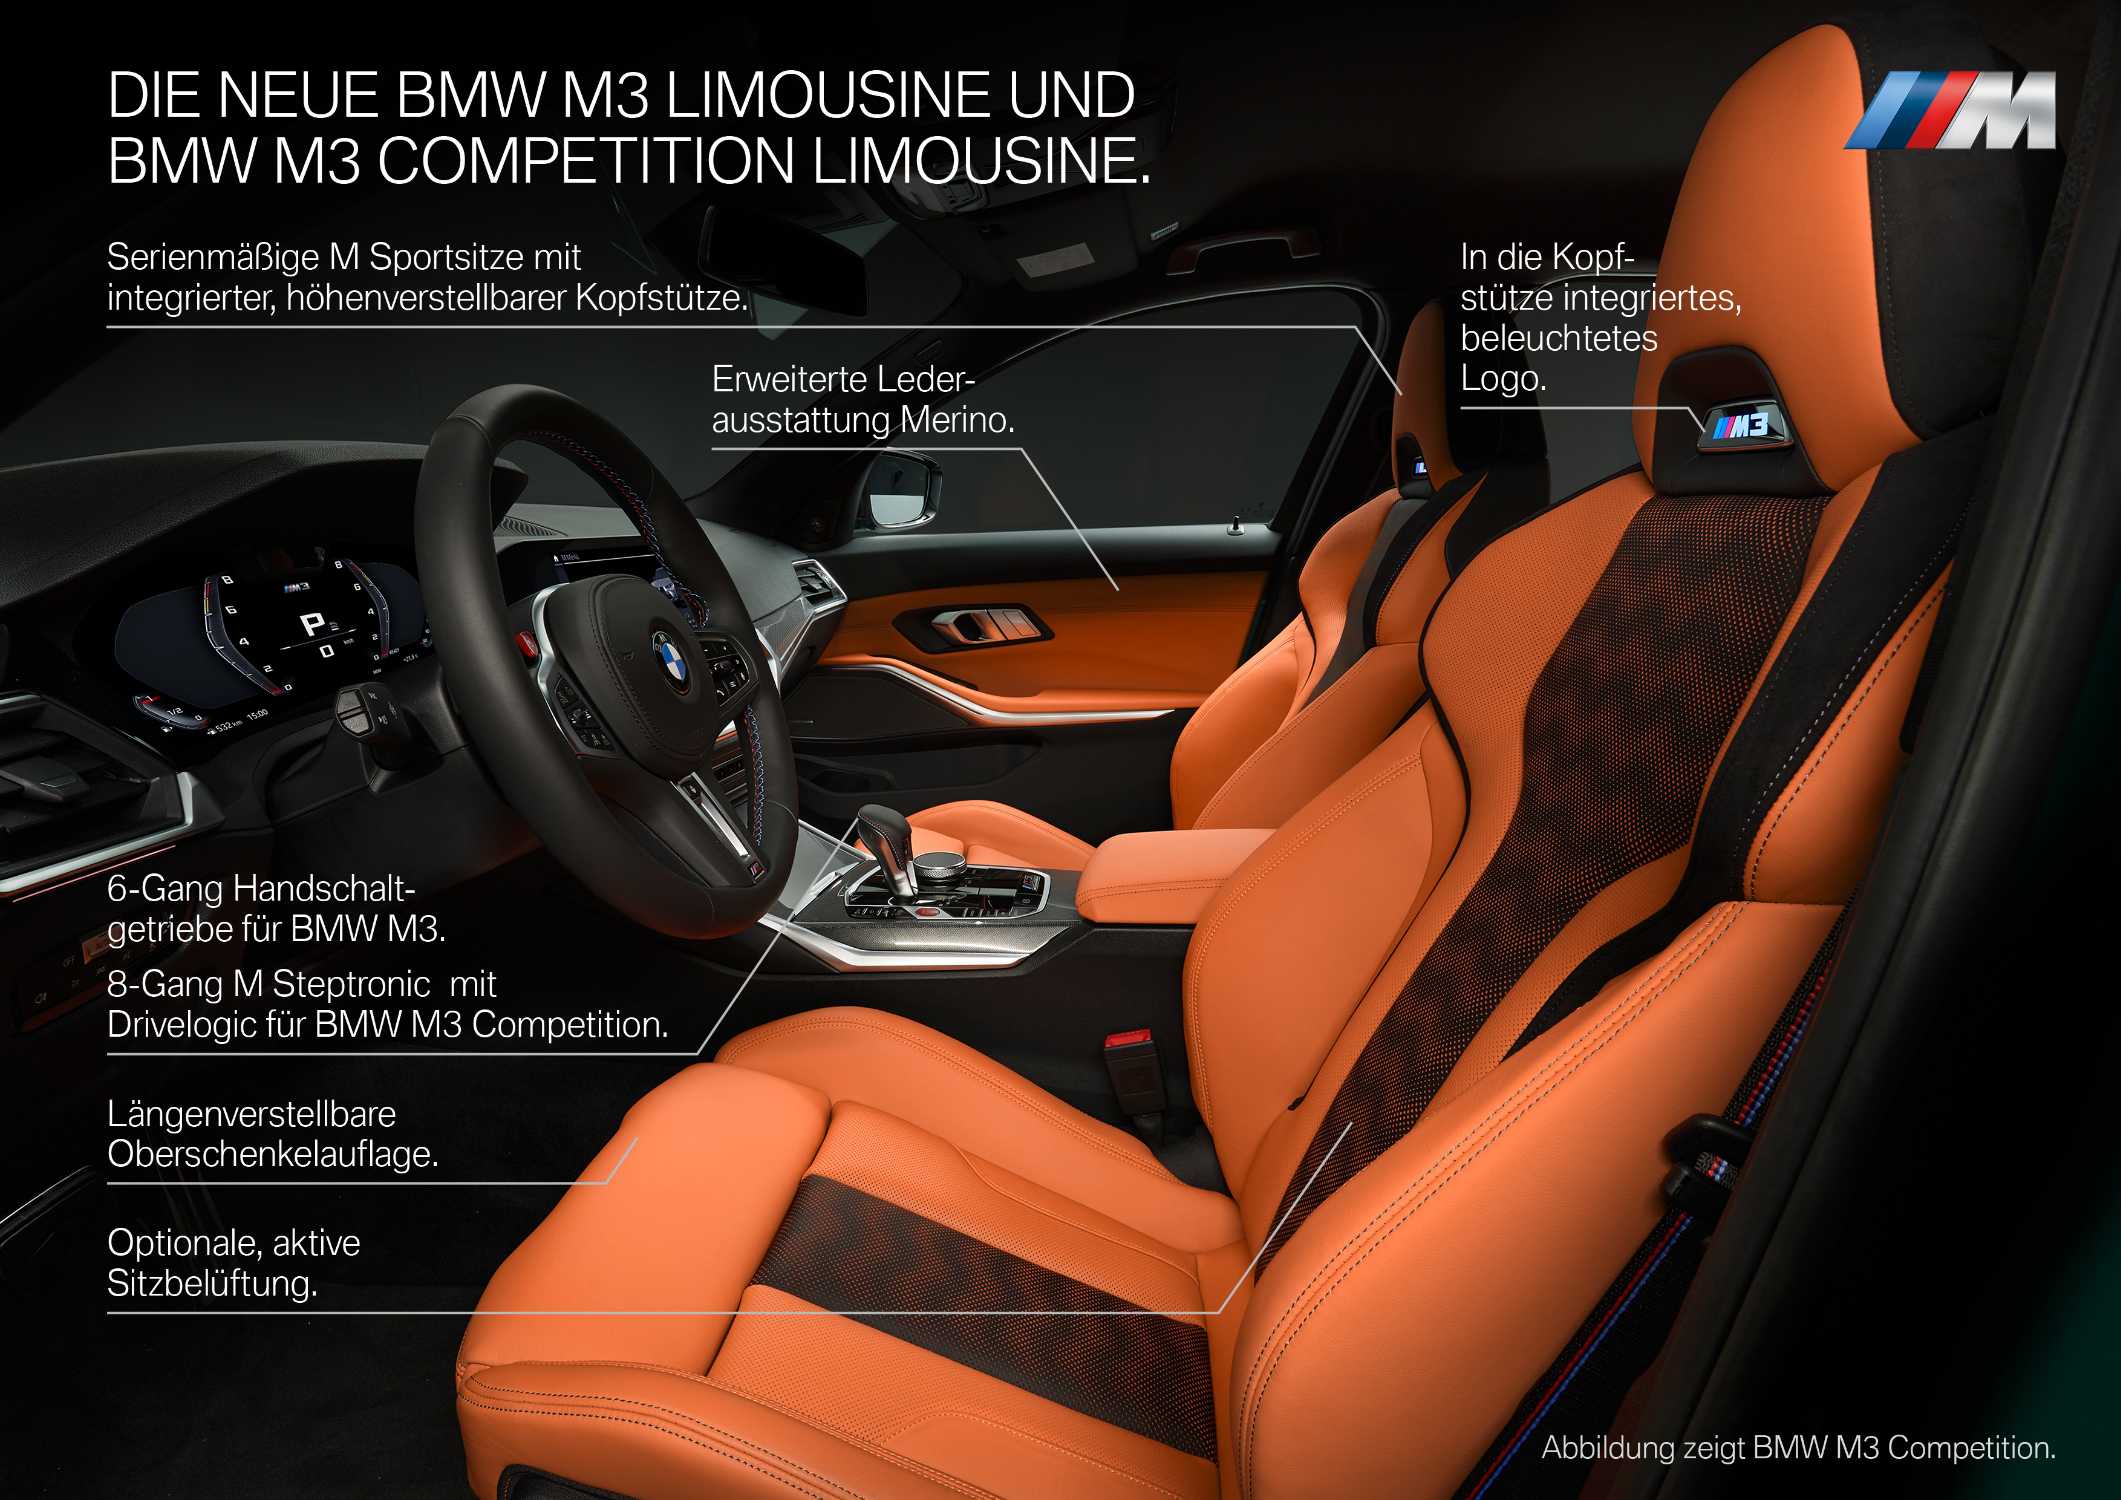 Die neue BMW M3 Competition Limousine (09/2020).